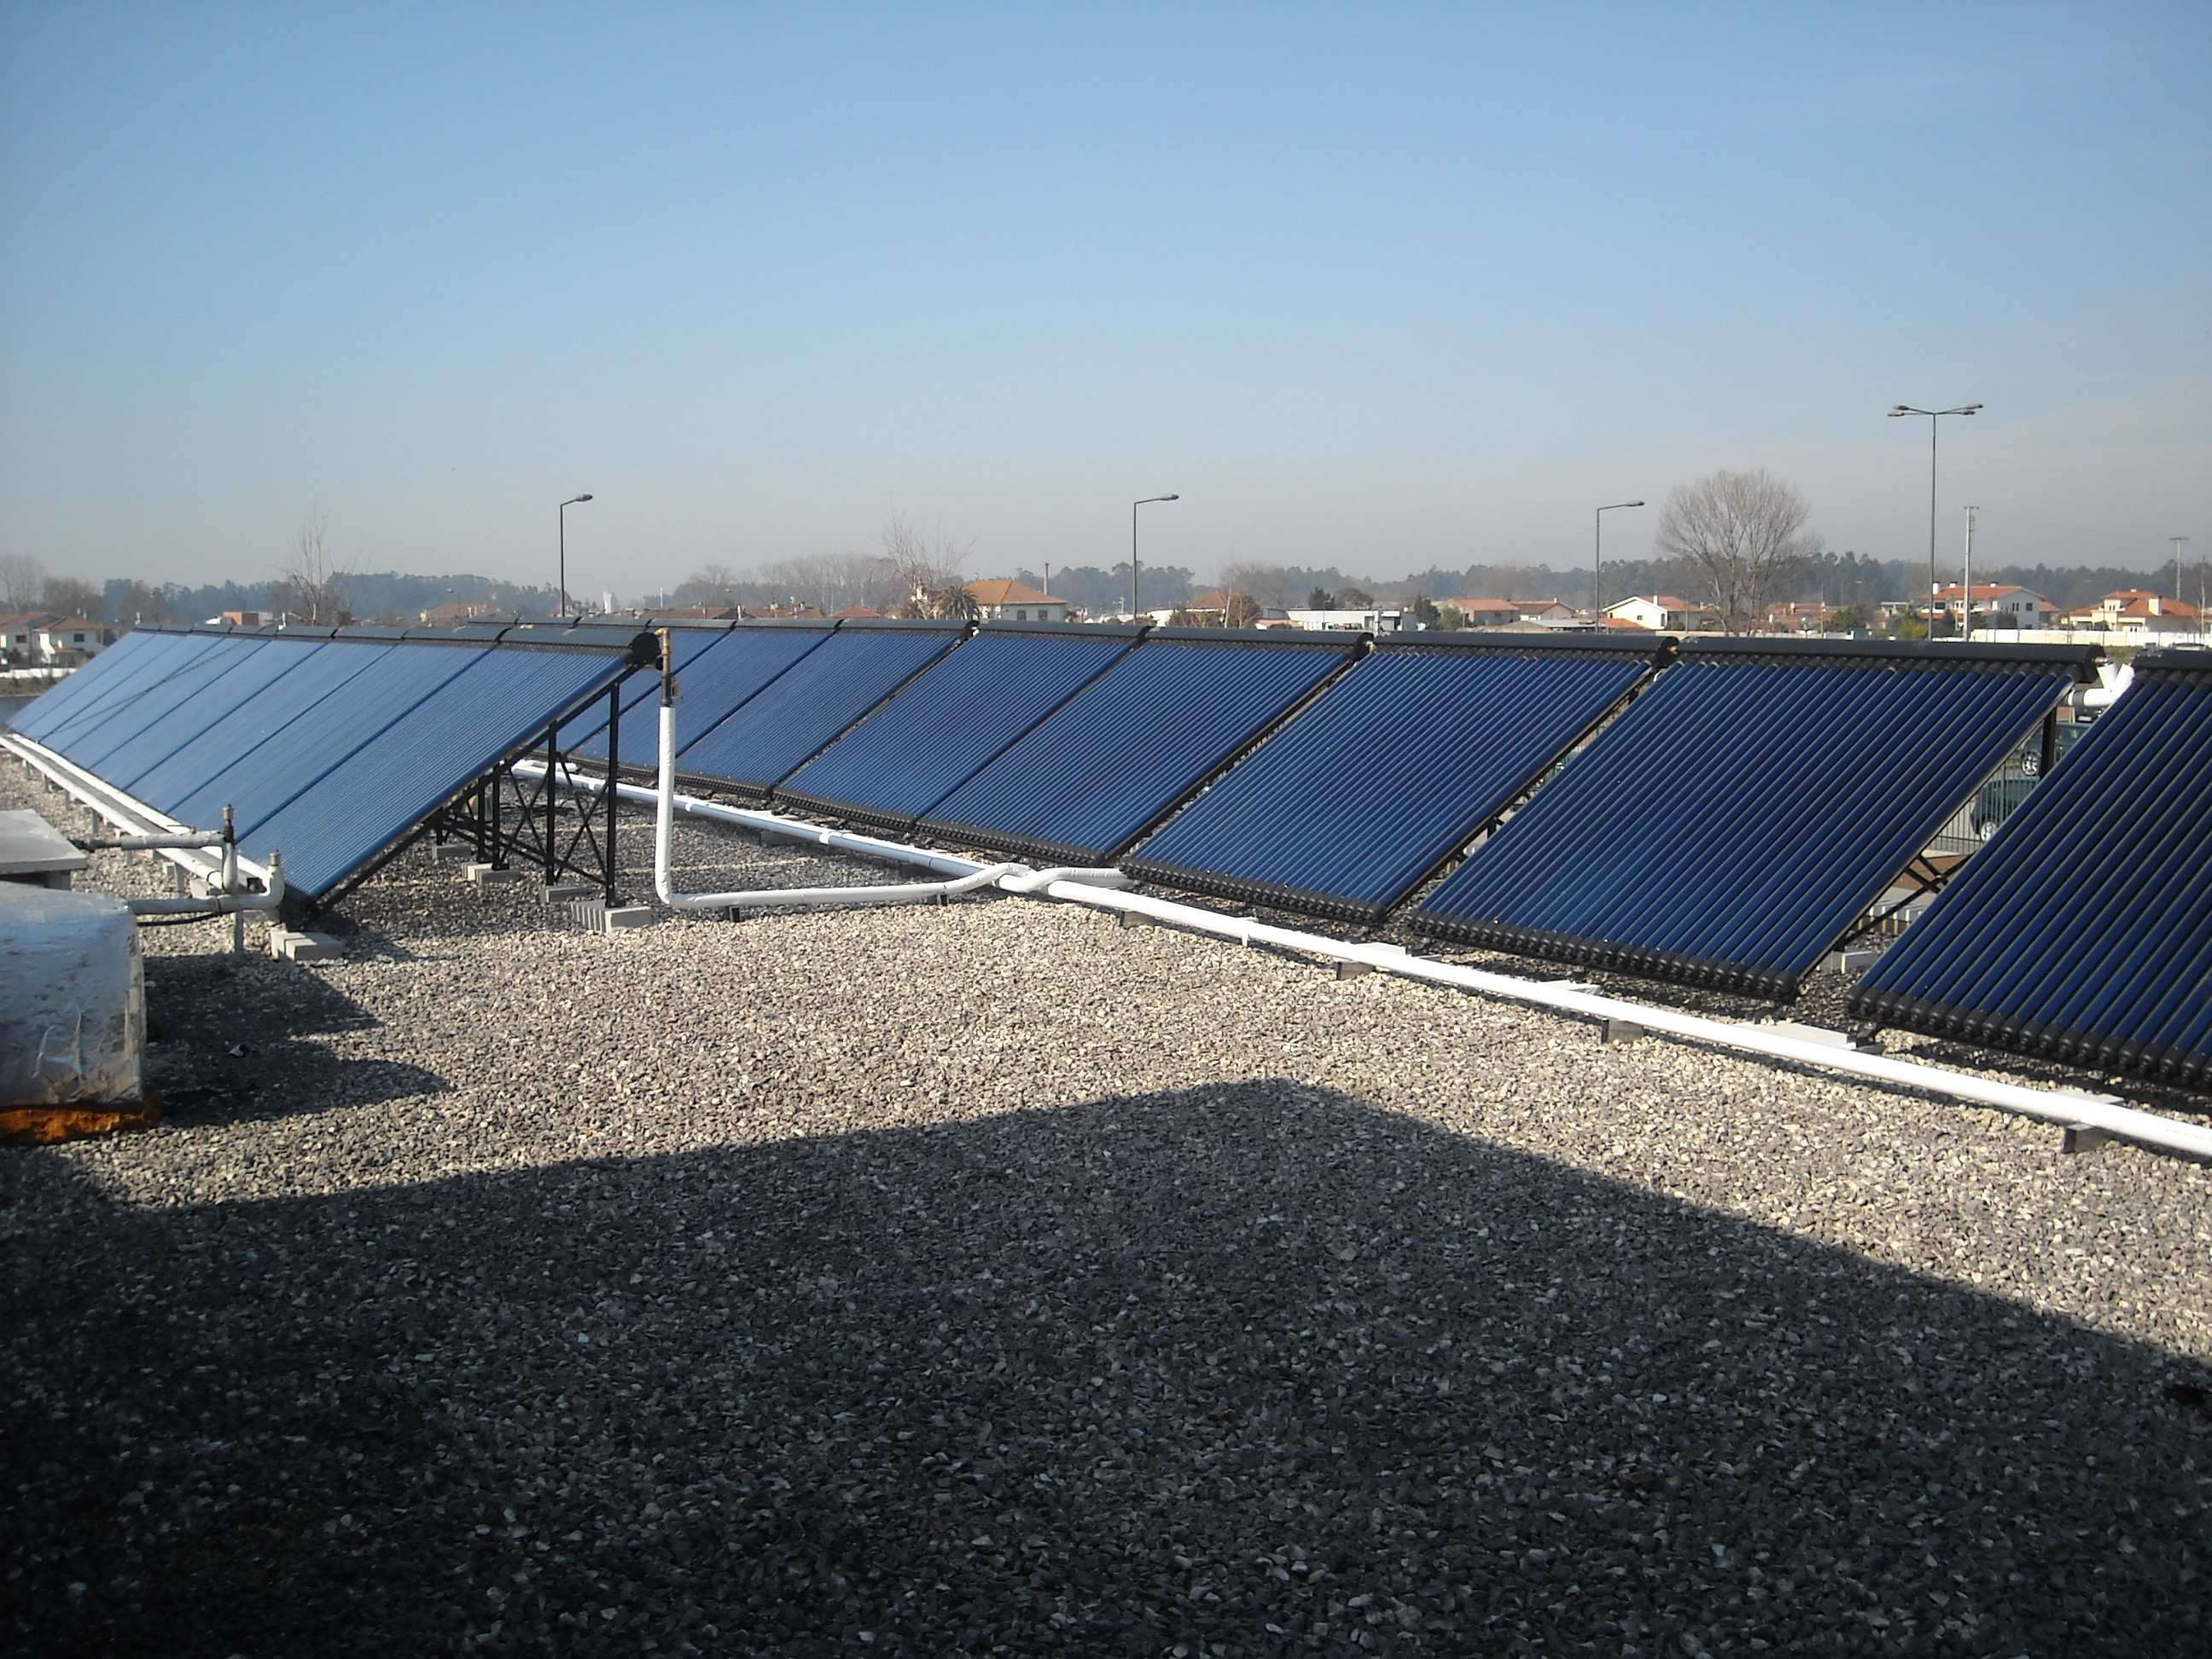 - Colectores solares Sinuta4Sun. - Produção anual de cerca de 75000kWh.